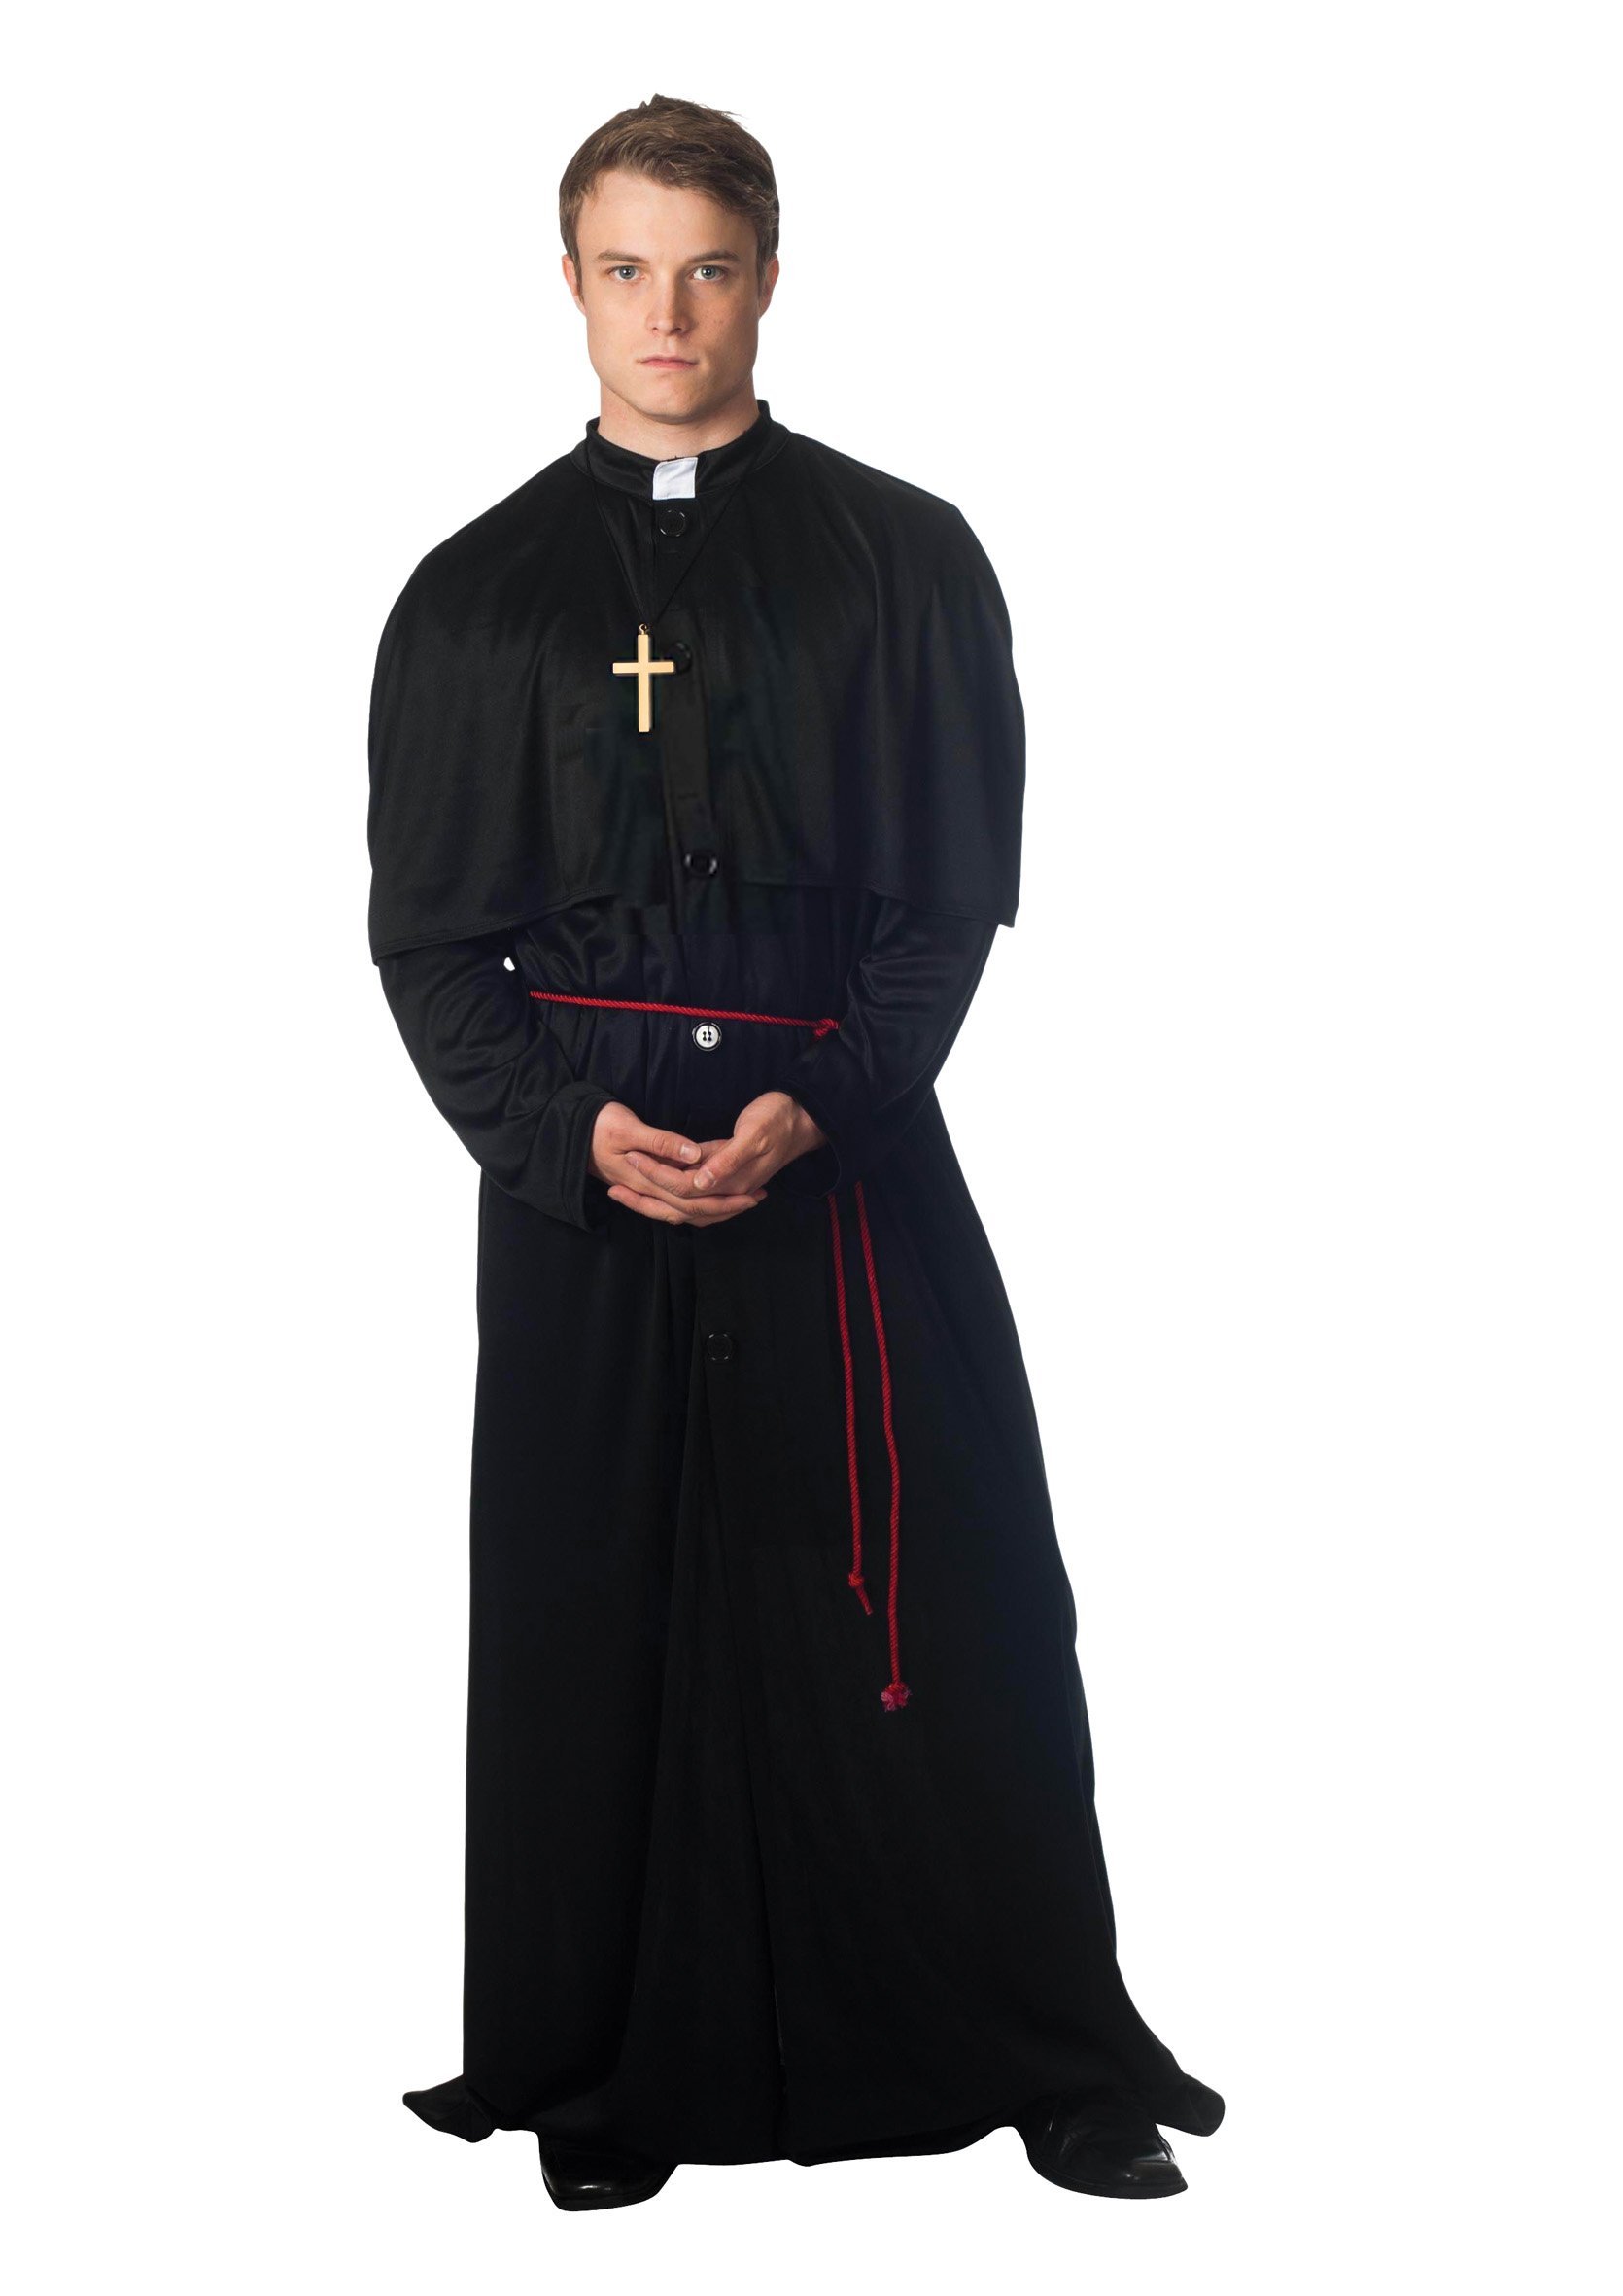 Мантия священника Католика